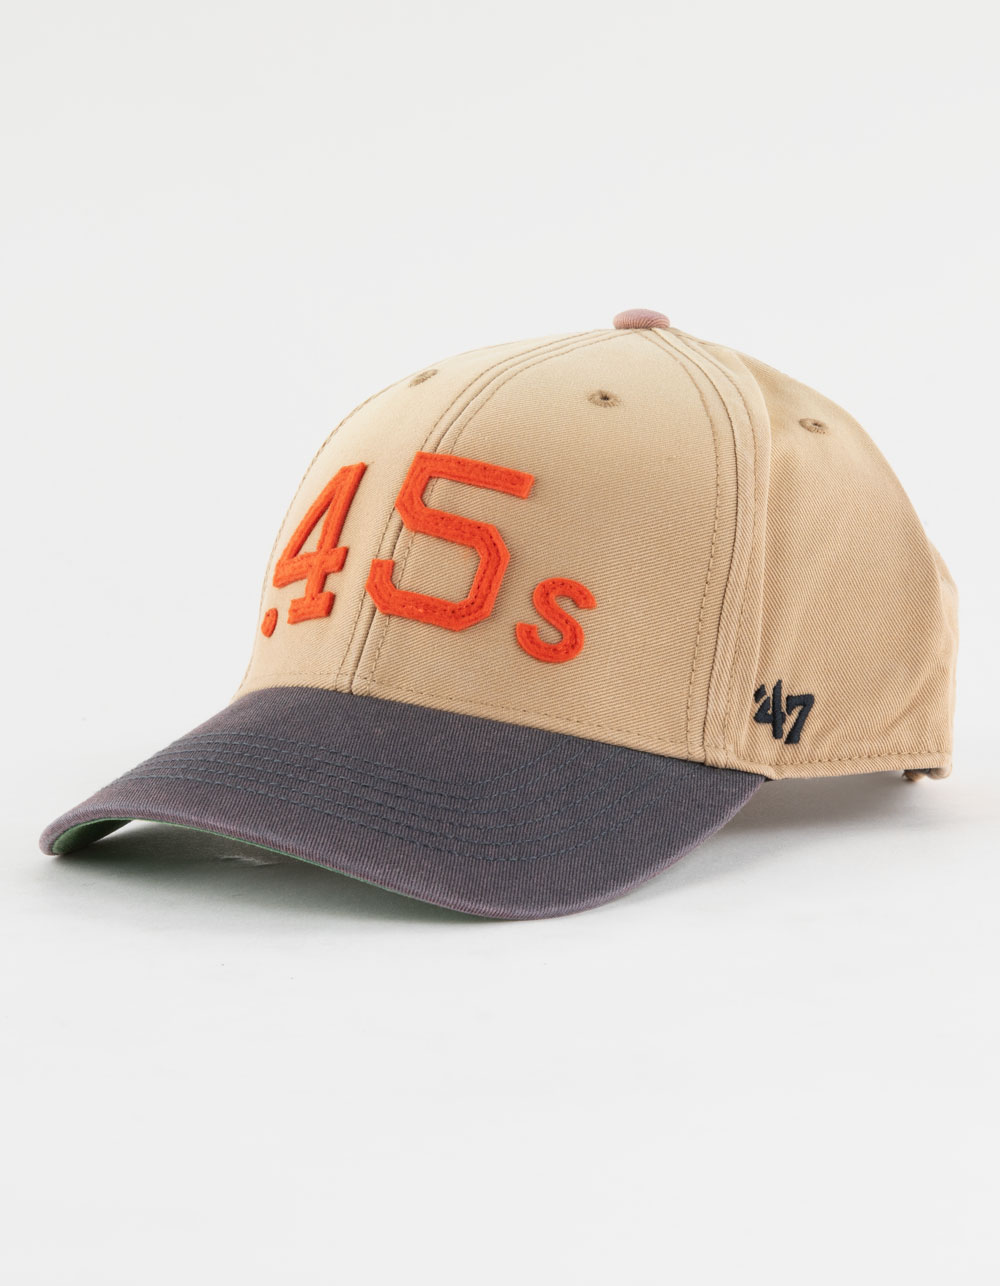 47 BRAND Houston Astros Cooperstown World Series '47 MVP Strapback Hat